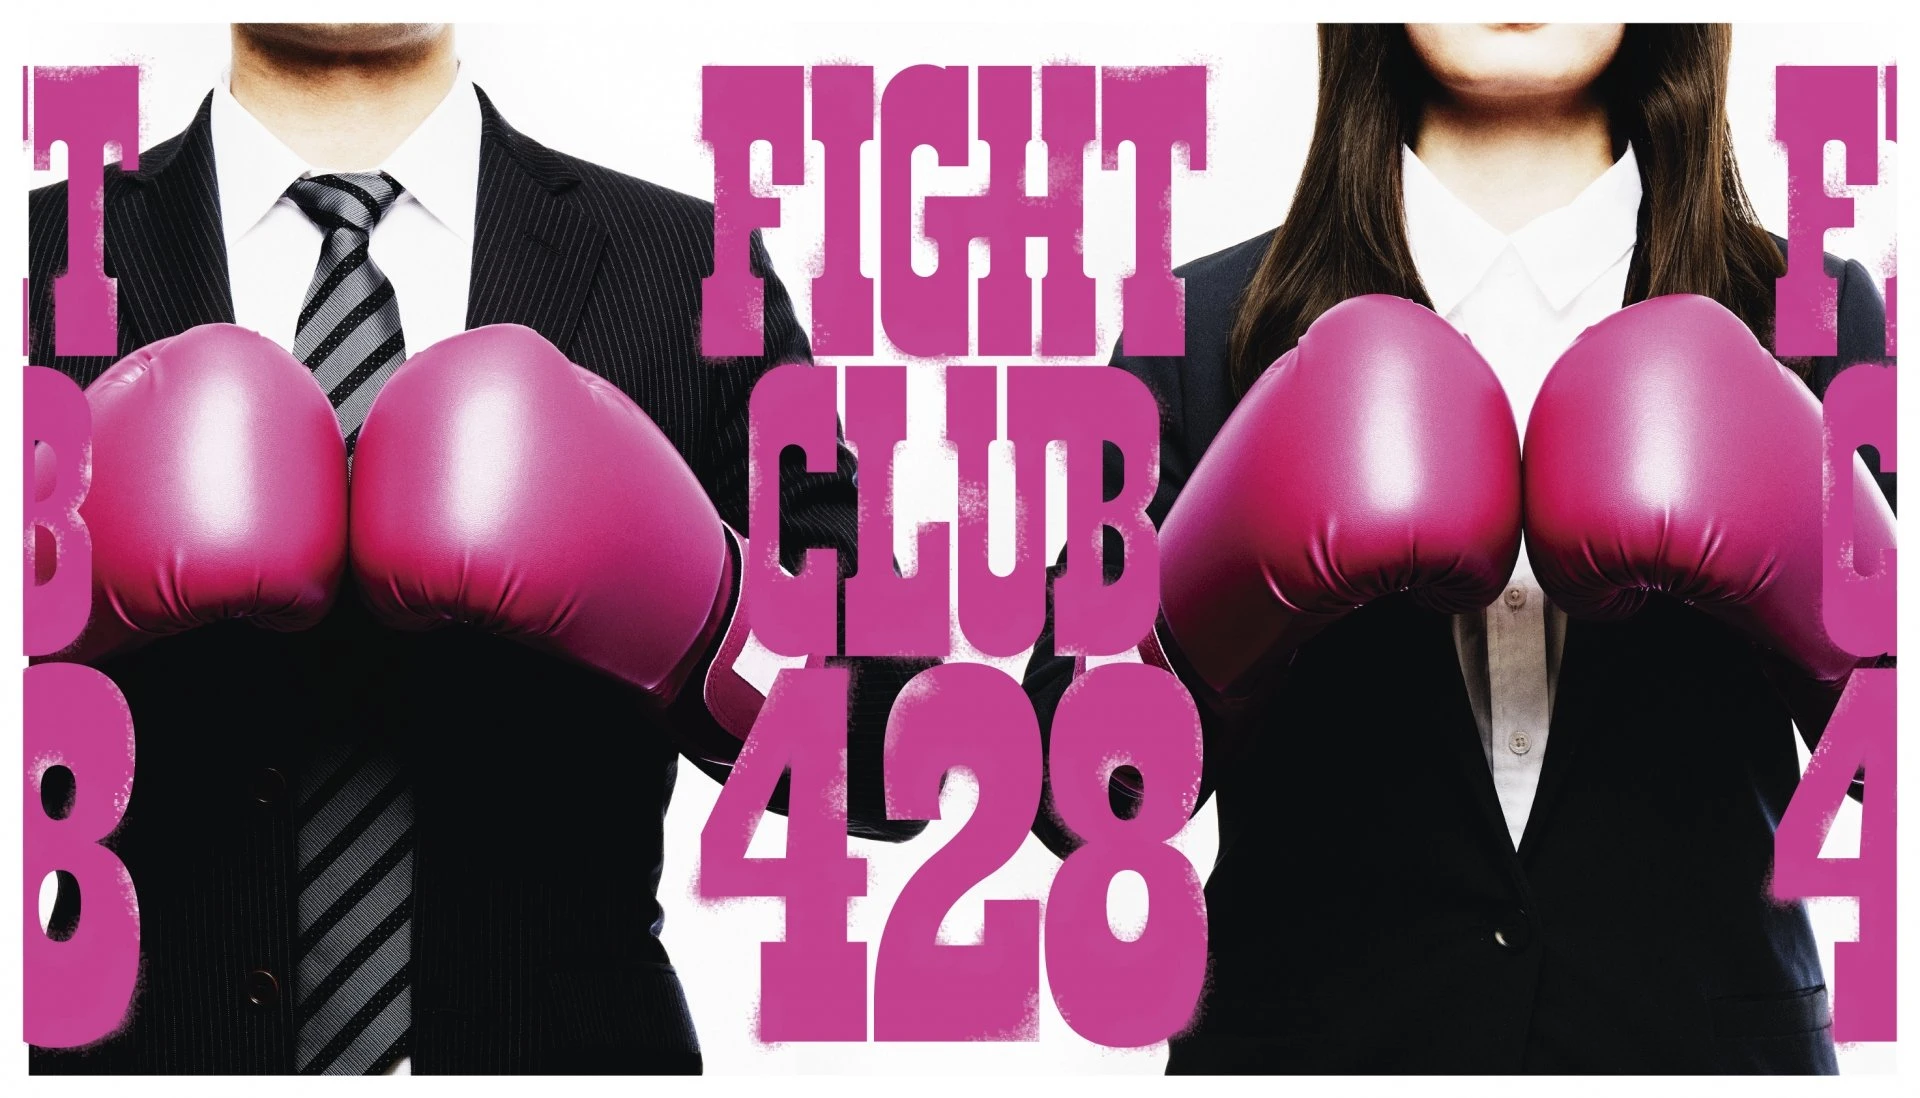 24時間利用できる格闘技フィットネスジム「FIGHT CLUB 428」